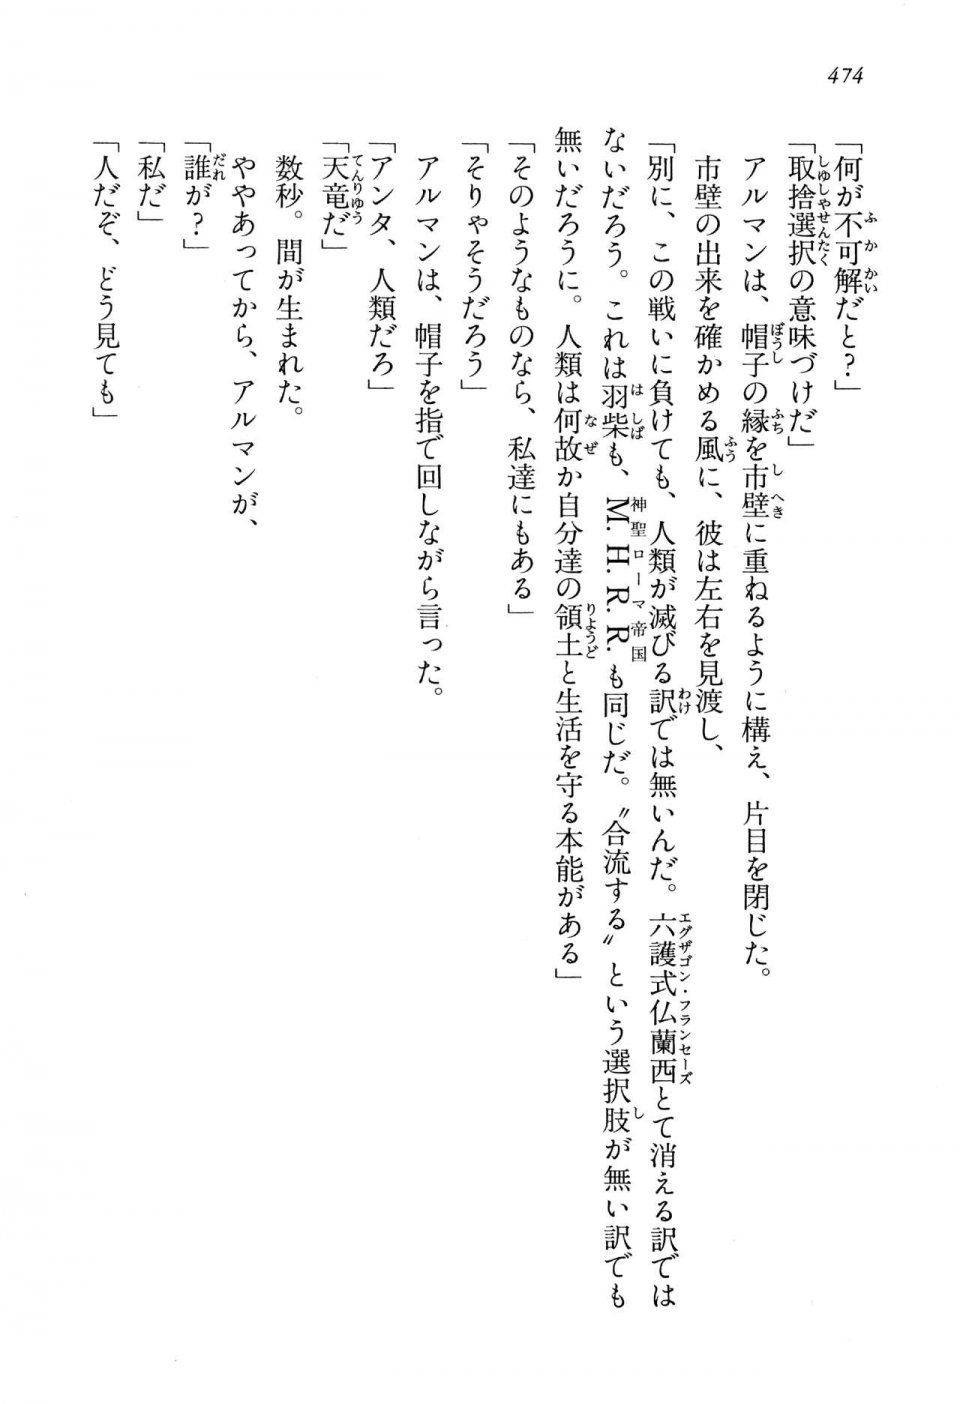 Kyoukai Senjou no Horizon LN Vol 13(6A) - Photo #474